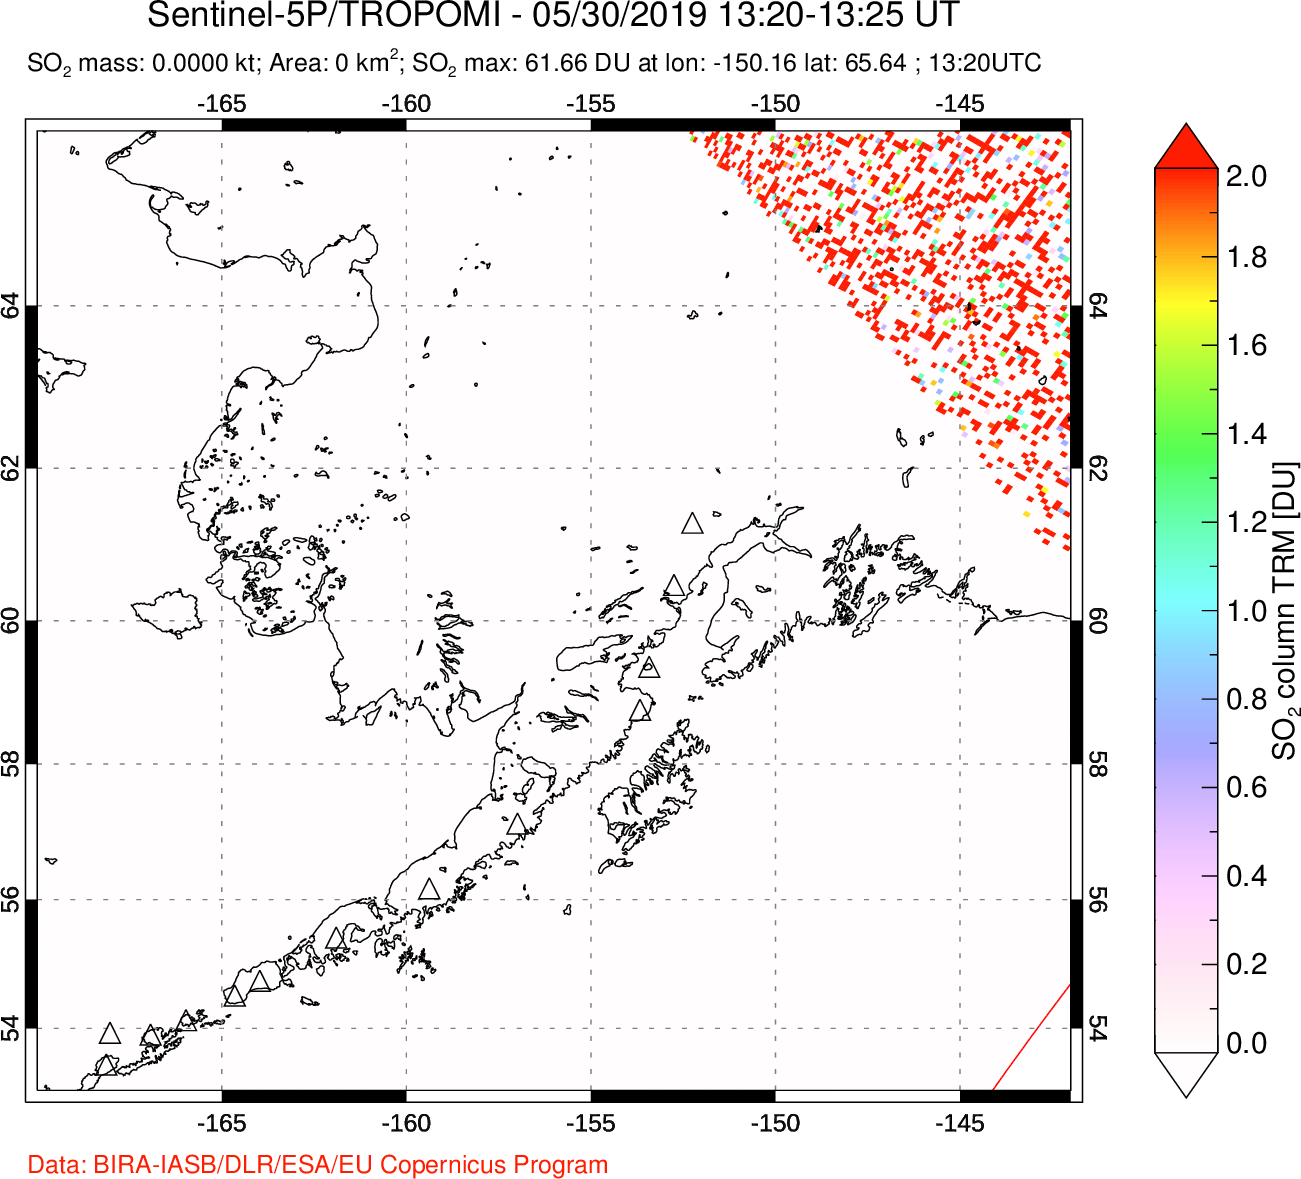 A sulfur dioxide image over Alaska, USA on May 30, 2019.